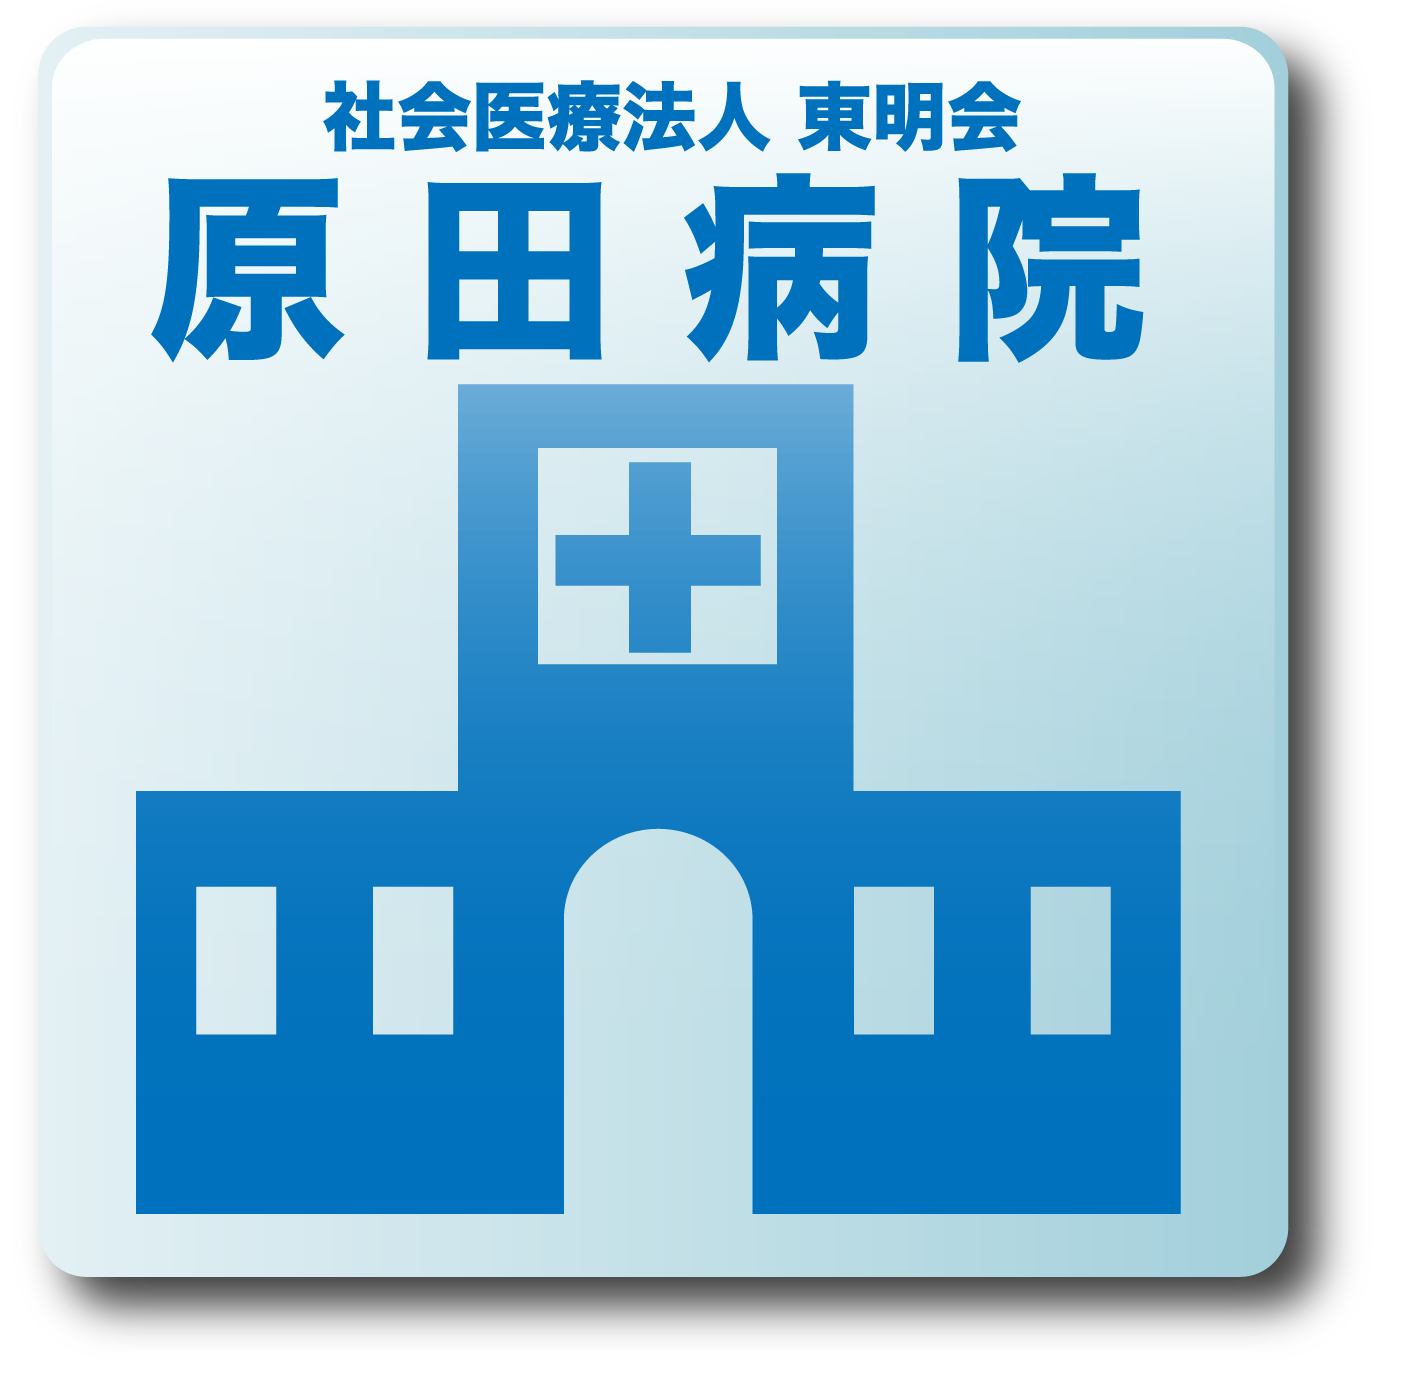 社会医療法人 東明会 原田病院のトップページへ